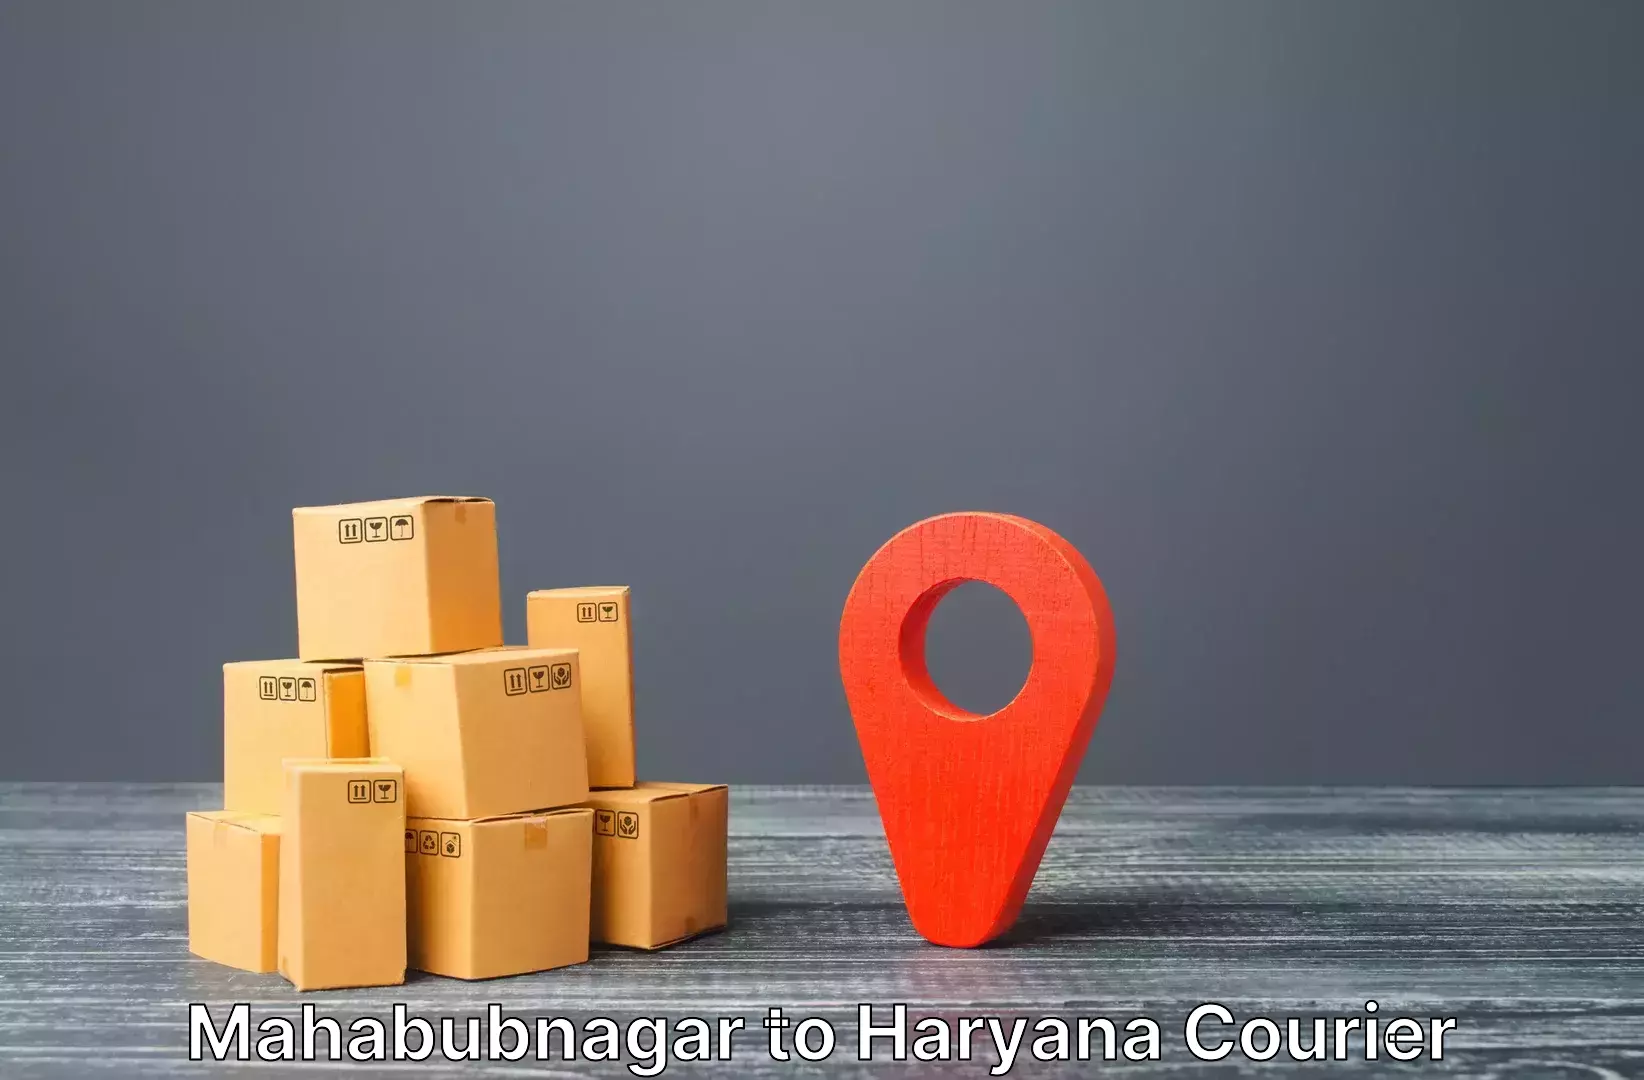 Baggage shipping experts Mahabubnagar to Bhiwani